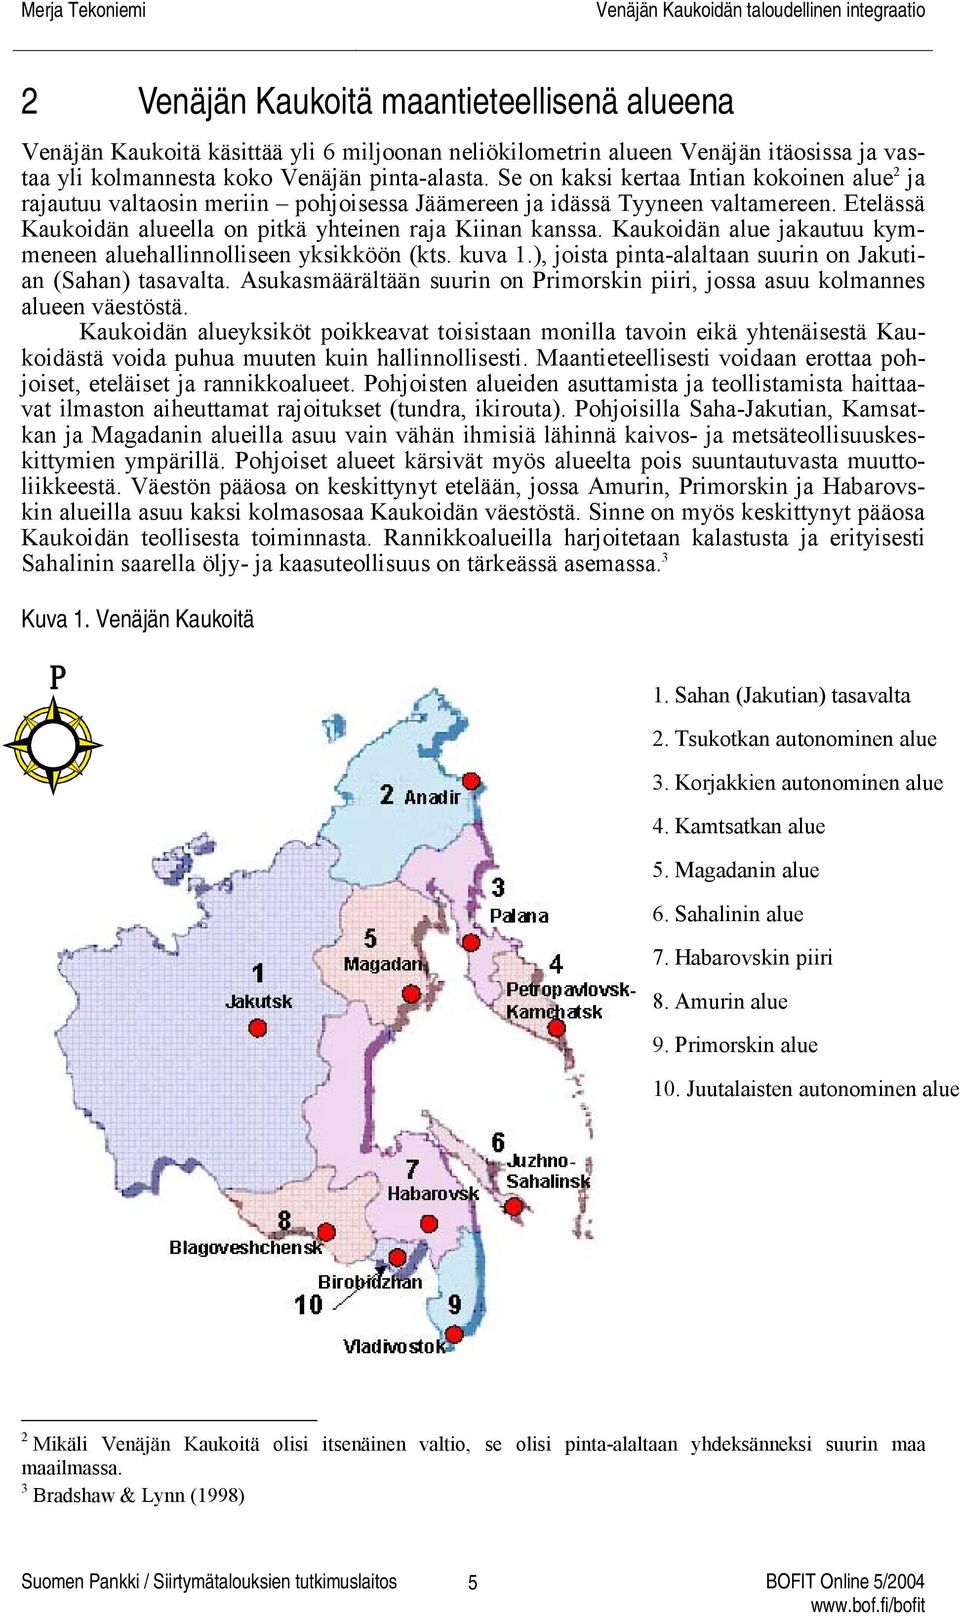 Kaukoidän alue jakautuu kymmeneen aluehallinnolliseen yksikköön (kts. kuva 1.), joista pinta-alaltaan suurin on Jakutian (Sahan) tasavalta.